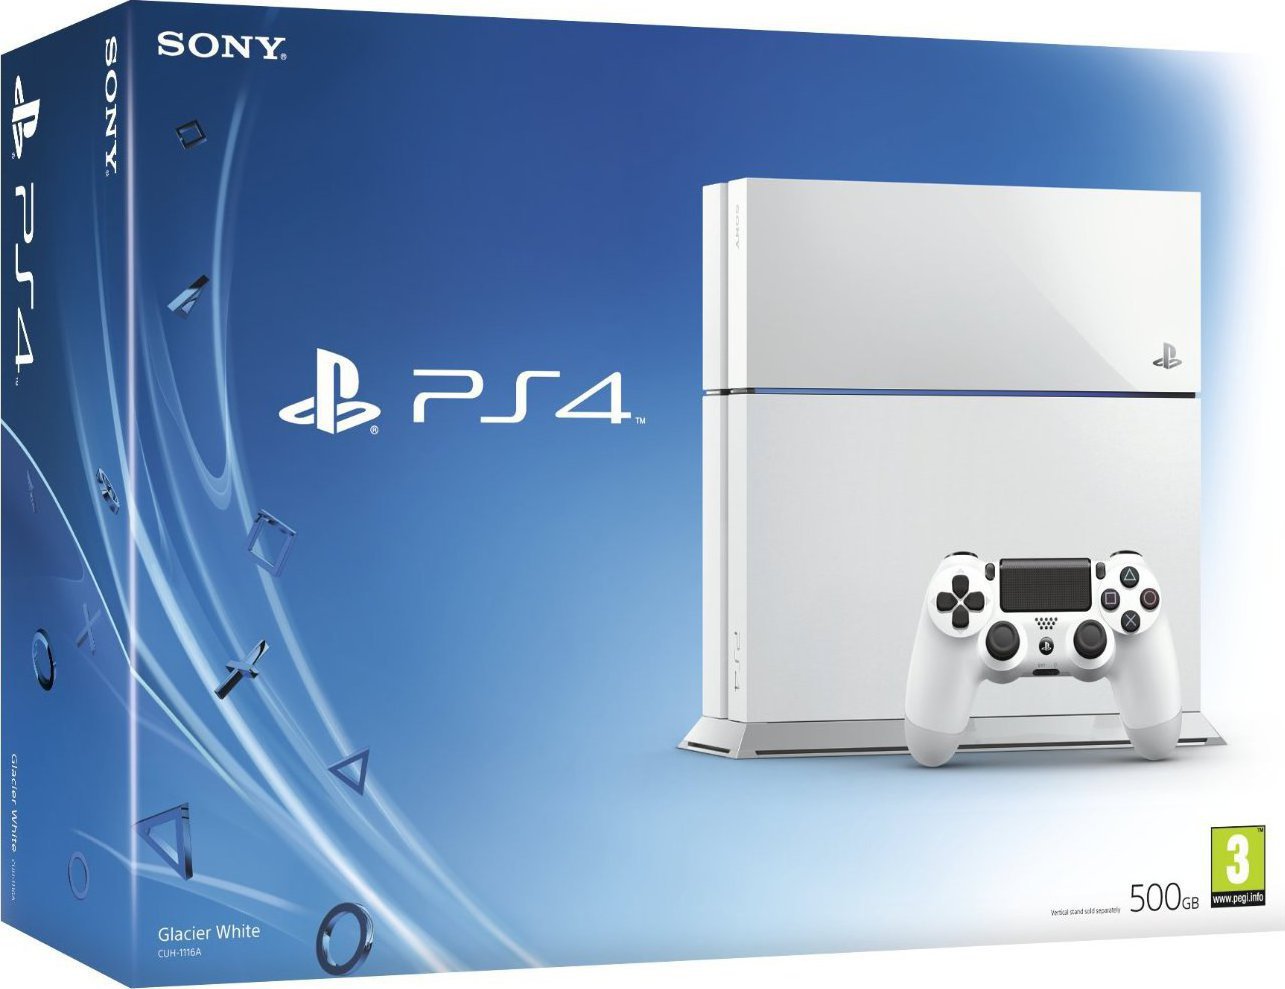 Η Sony ανακοίνωσε το λευκό PS4 Slim